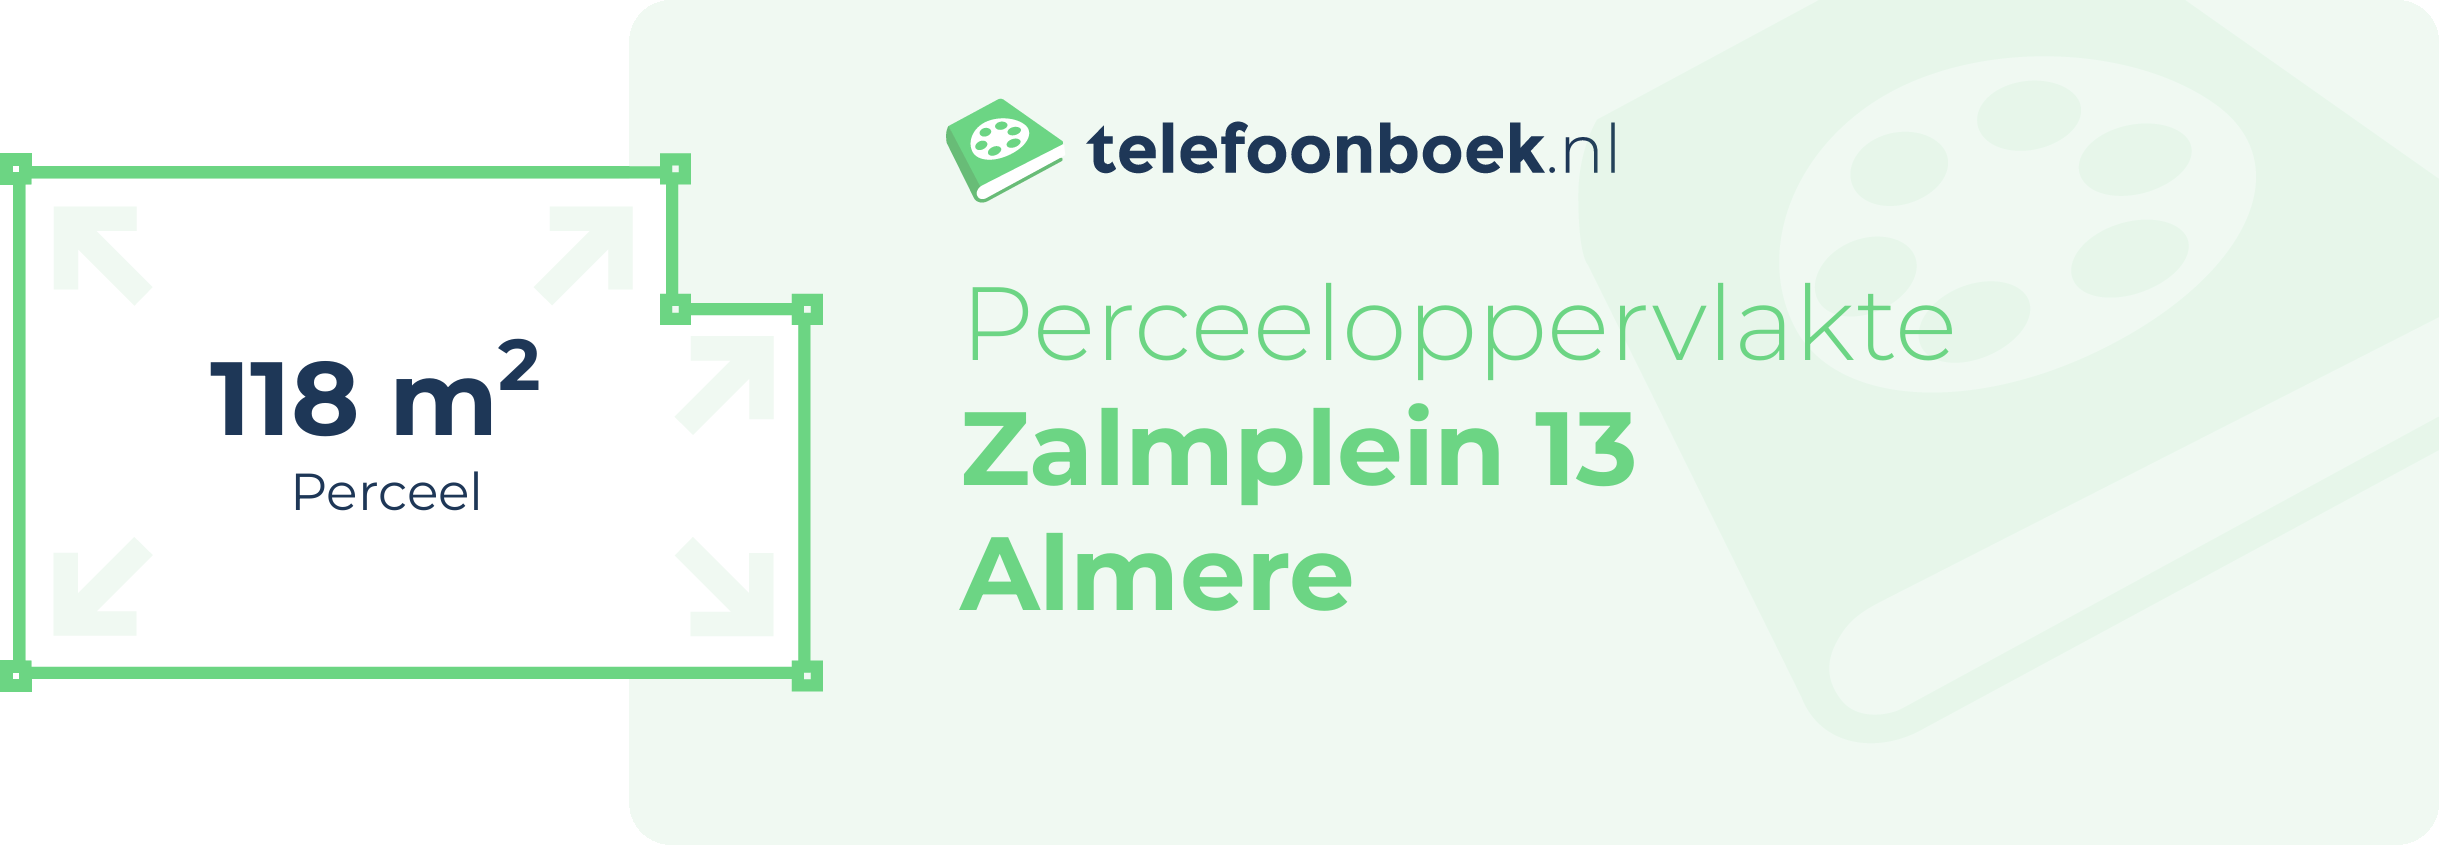 Perceeloppervlakte Zalmplein 13 Almere